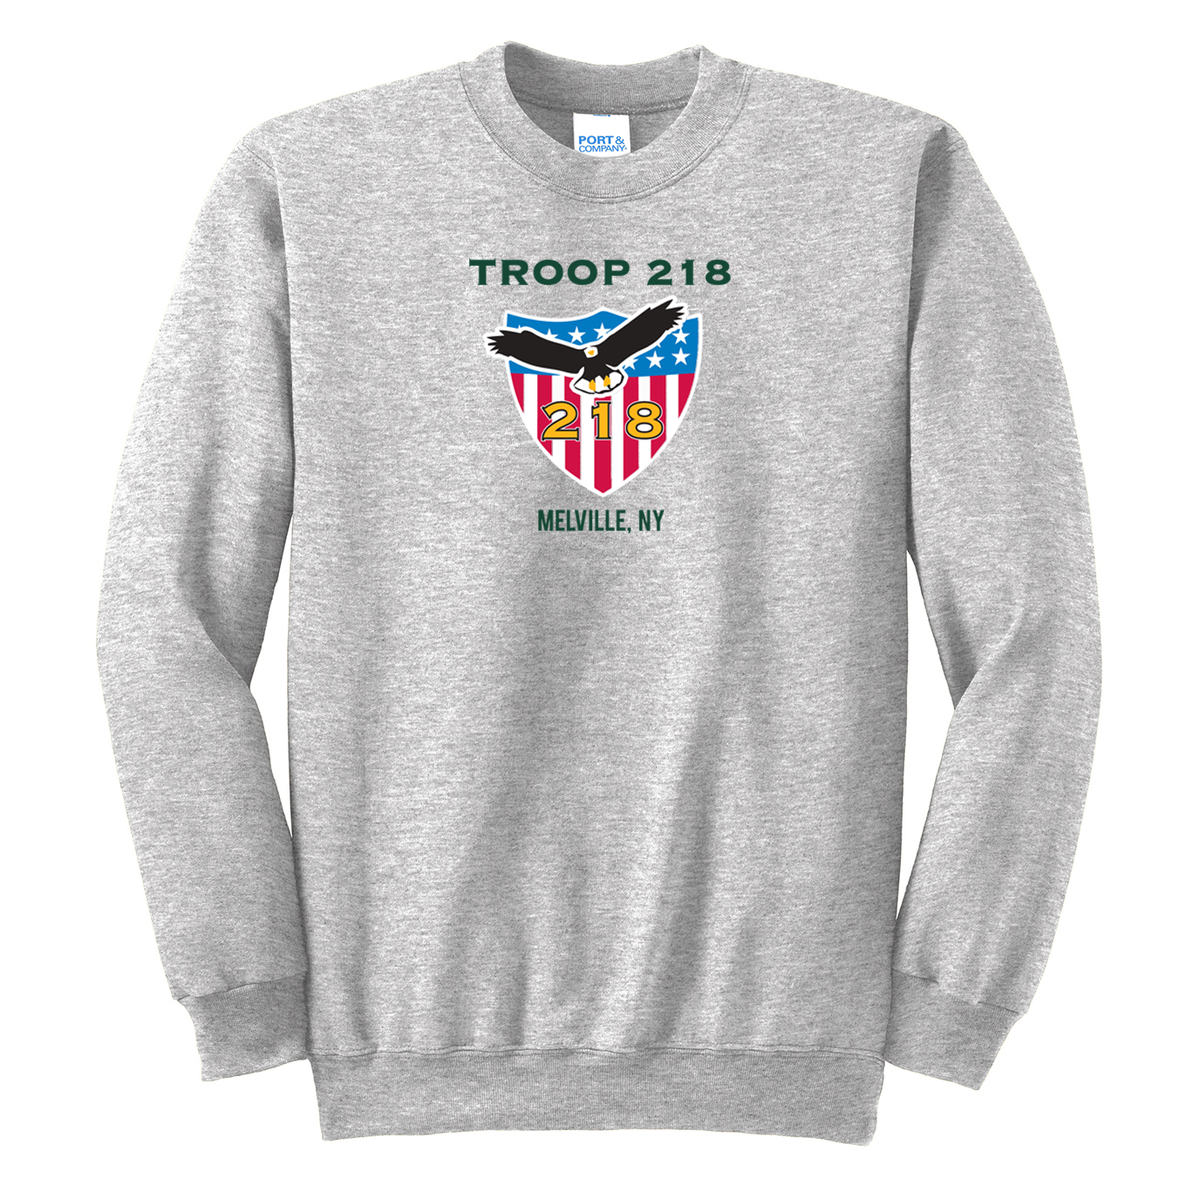 Troop 218 Crew Neck Sweater